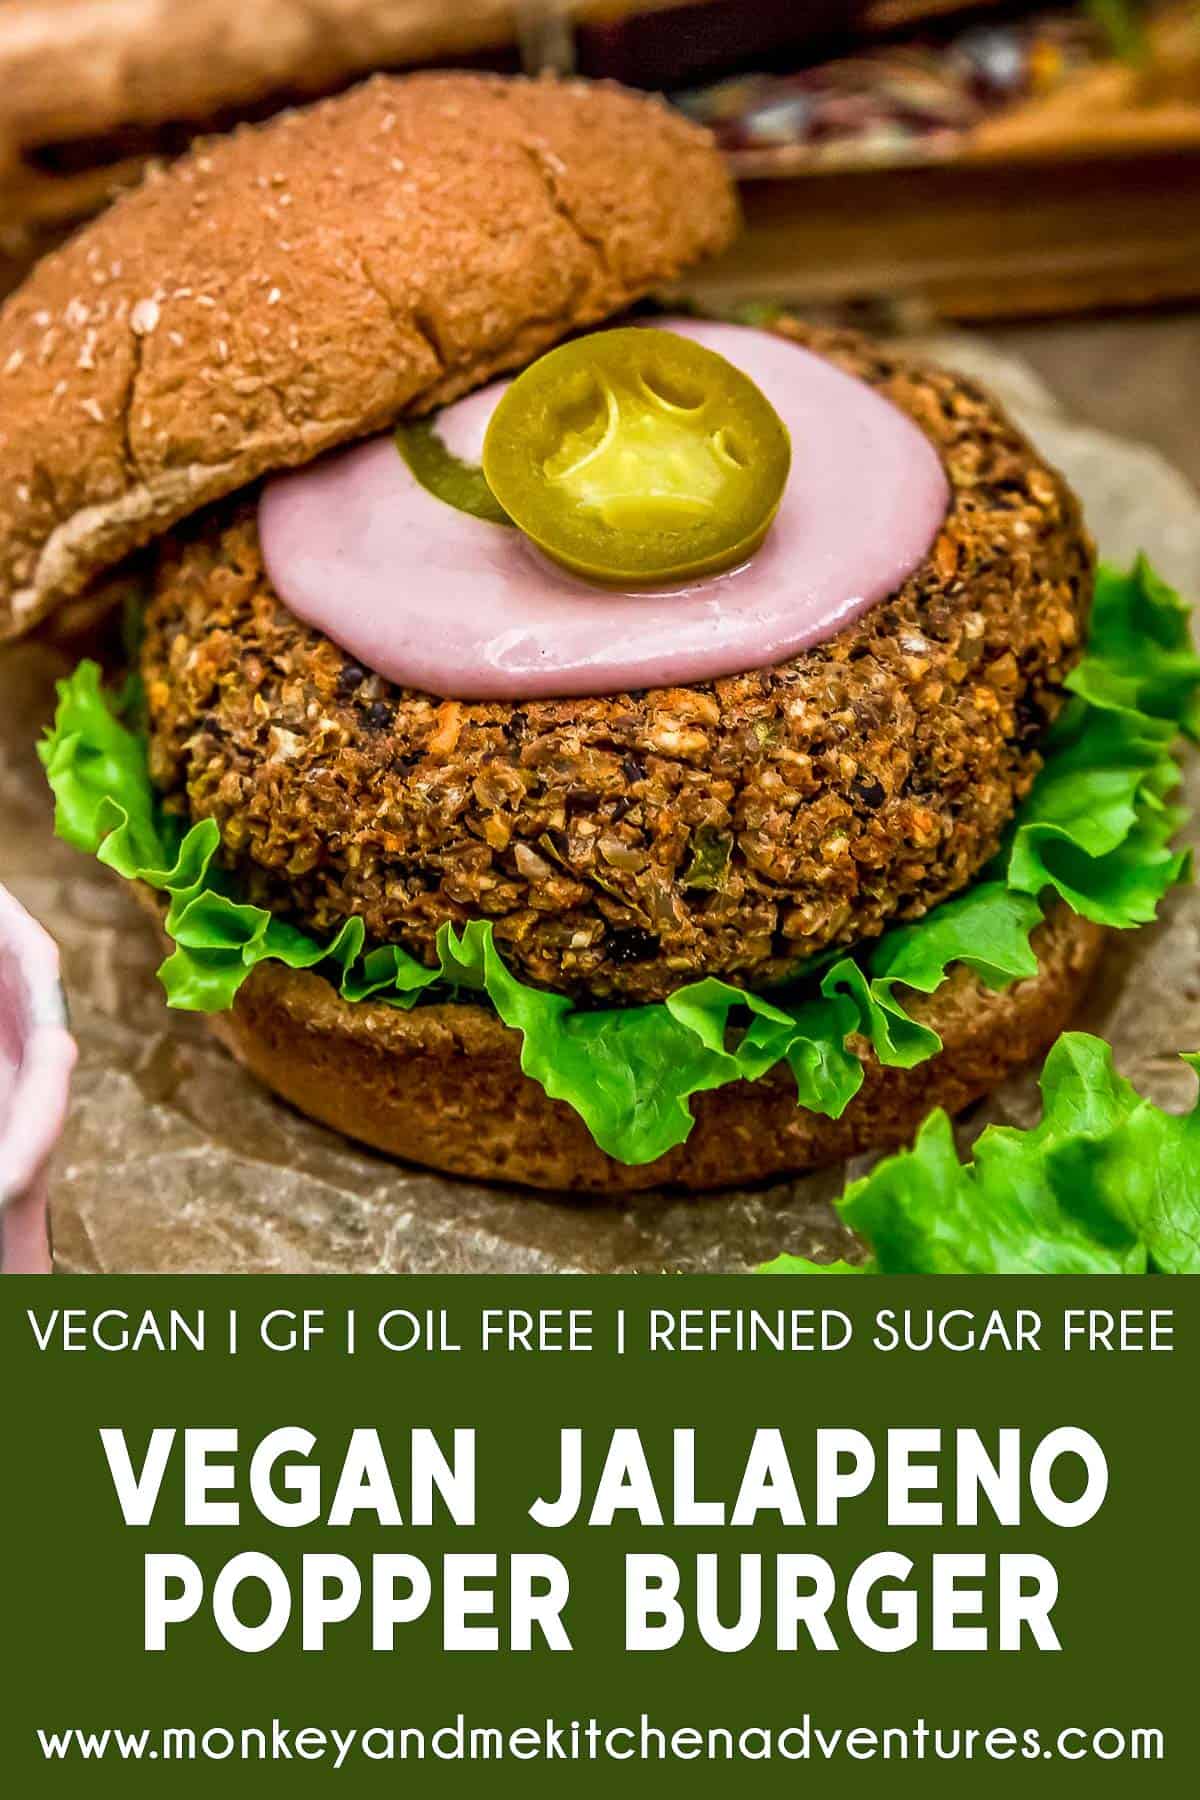 Vegan Jalapeño Popper Burger with Text Description